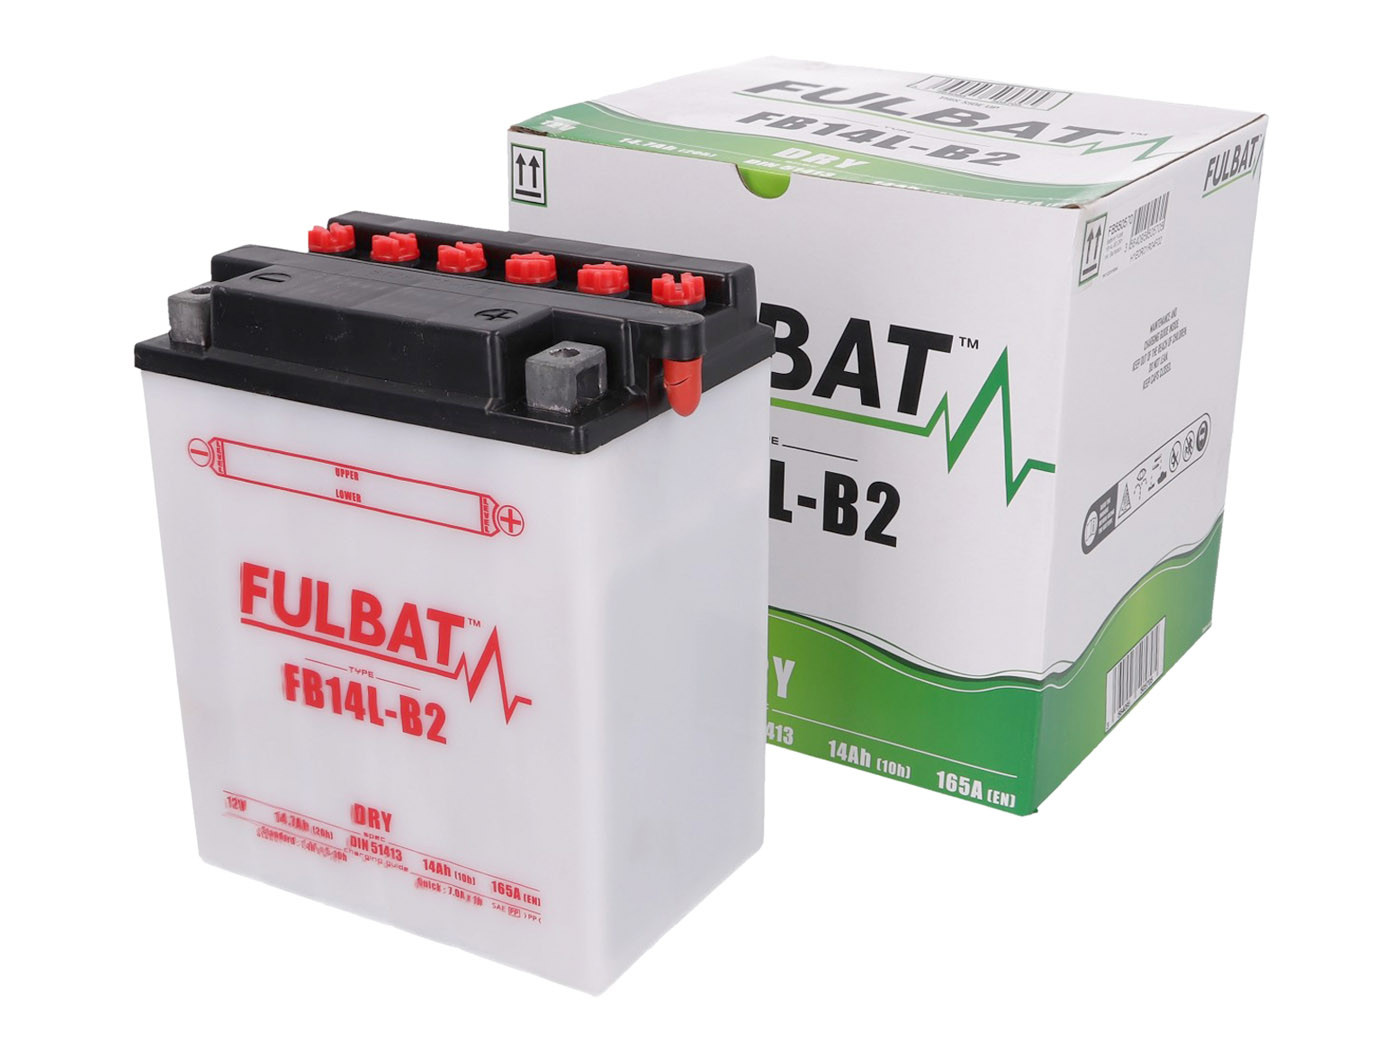 Fulbat FB14L-B2 DRY száraz akkumulátor + savcsomag